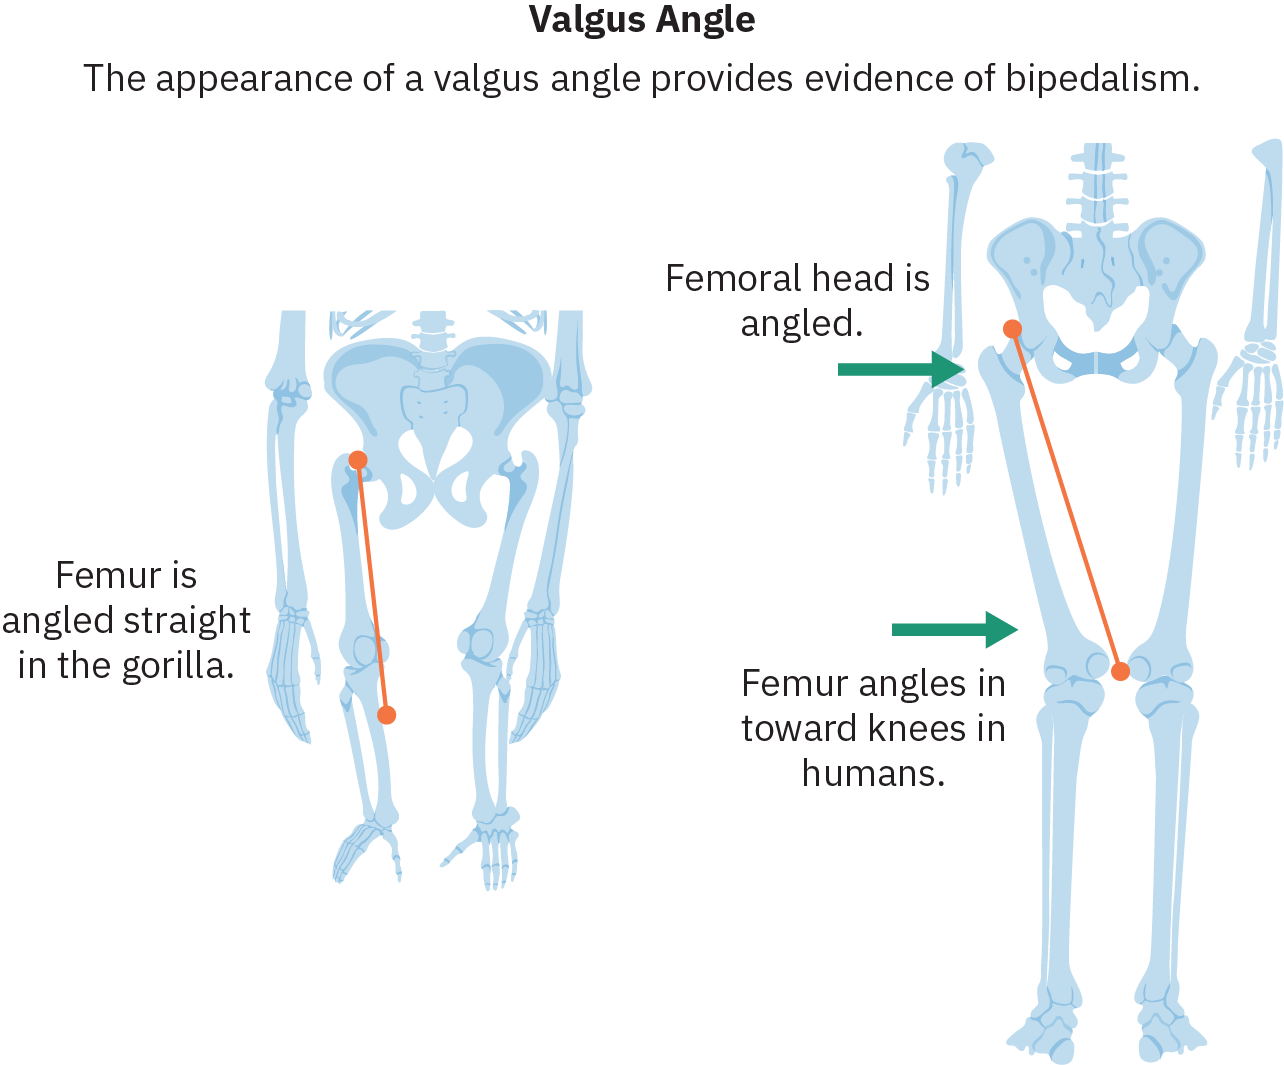 Bocetos de caderas y piernas de dos especies diferentes. A la izquierda hay un esqueleto con brazos largos y piernas cortas que se extienden recto hacia abajo desde las caderas. Una línea traza el fémur (hueso de la parte superior de la pierna) y el texto relacionado dice “El fémur está inclinado recto en el gorila”. A la derecha se encuentra un esqueleto humano. Los fémures de este esqueleto se inclinan hacia adentro, con las rodillas más juntas que las cuencas de la cadera. El texto que apunta a la cadera dice “La cabeza femoral está angulada”. El texto que apunta al fémur dice “El fémur se inclina hacia las rodillas en los humanos”.